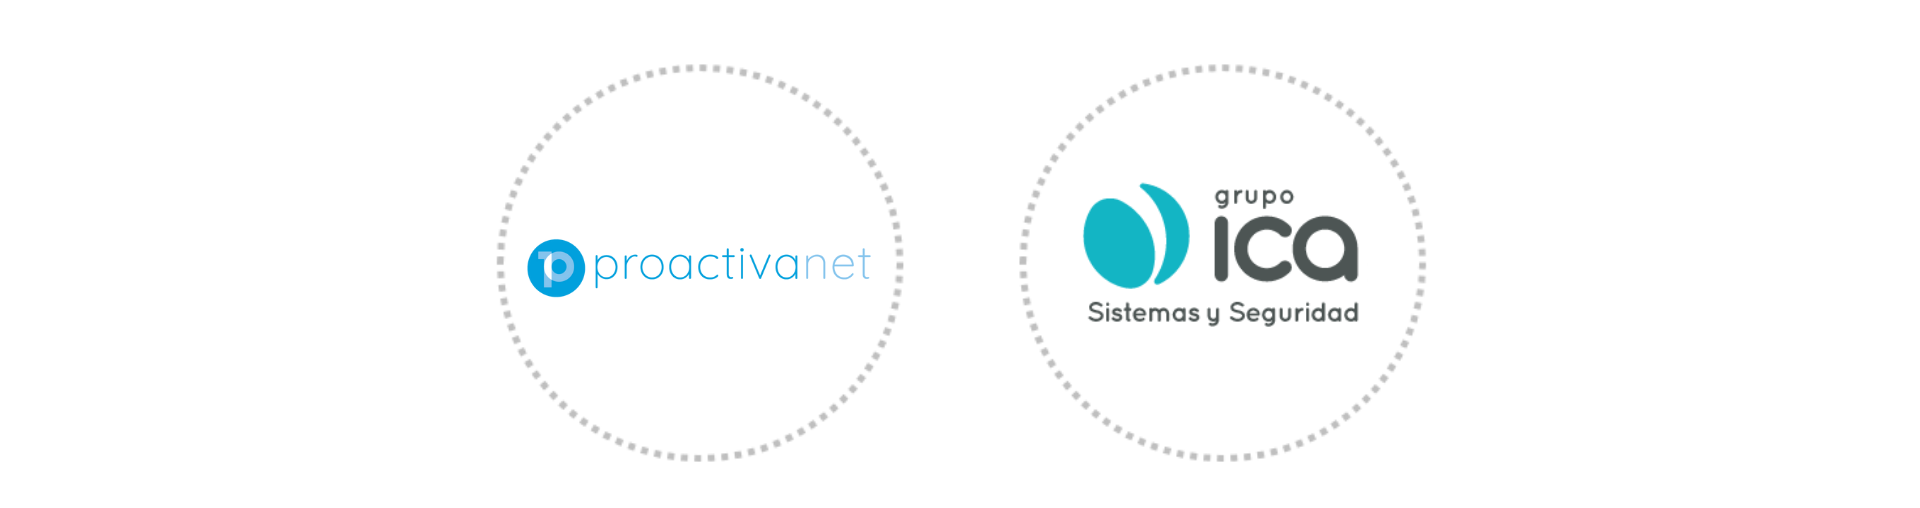 Proactivanet, nuestro nuevo impulso para el descubrimiento y gestión de activos y sus vulnerabilidades